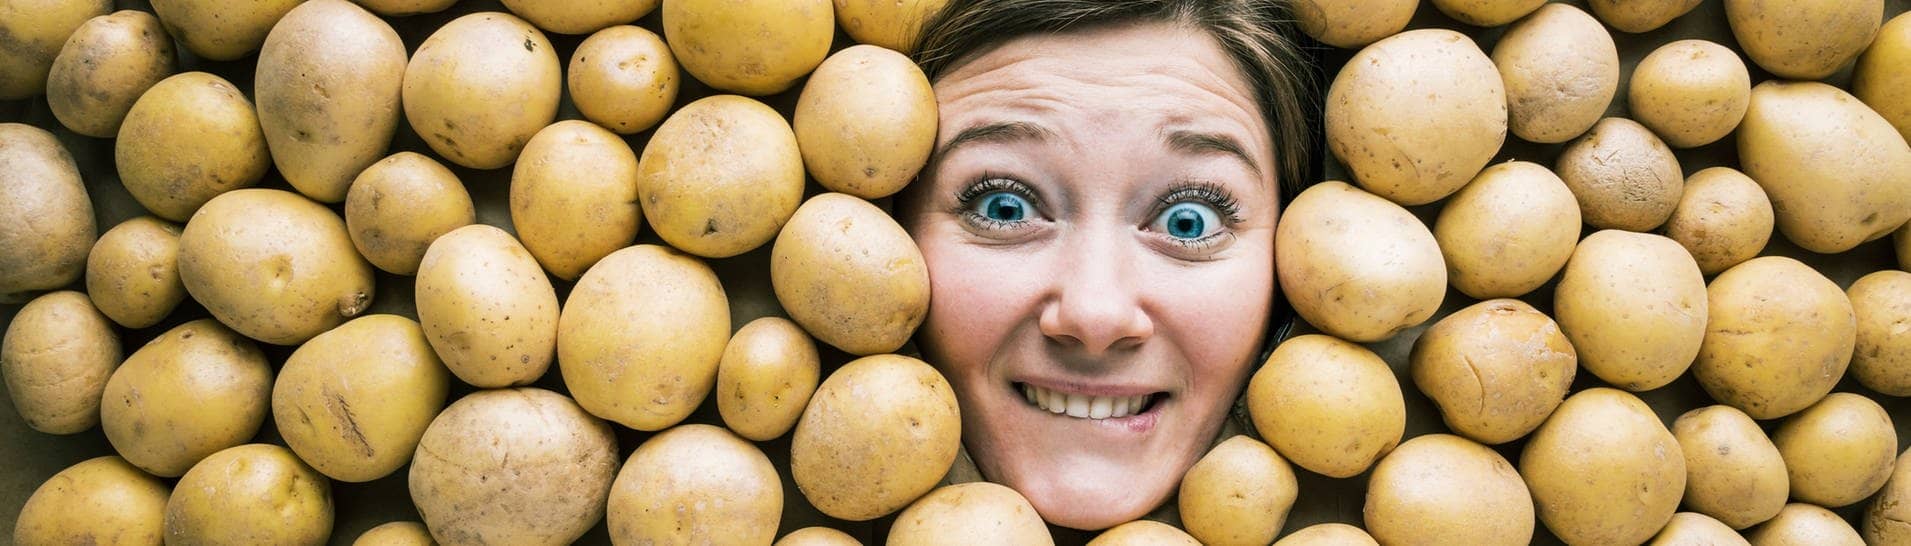 Gesicht einer Frau in einer Fläche aus Kartoffeln